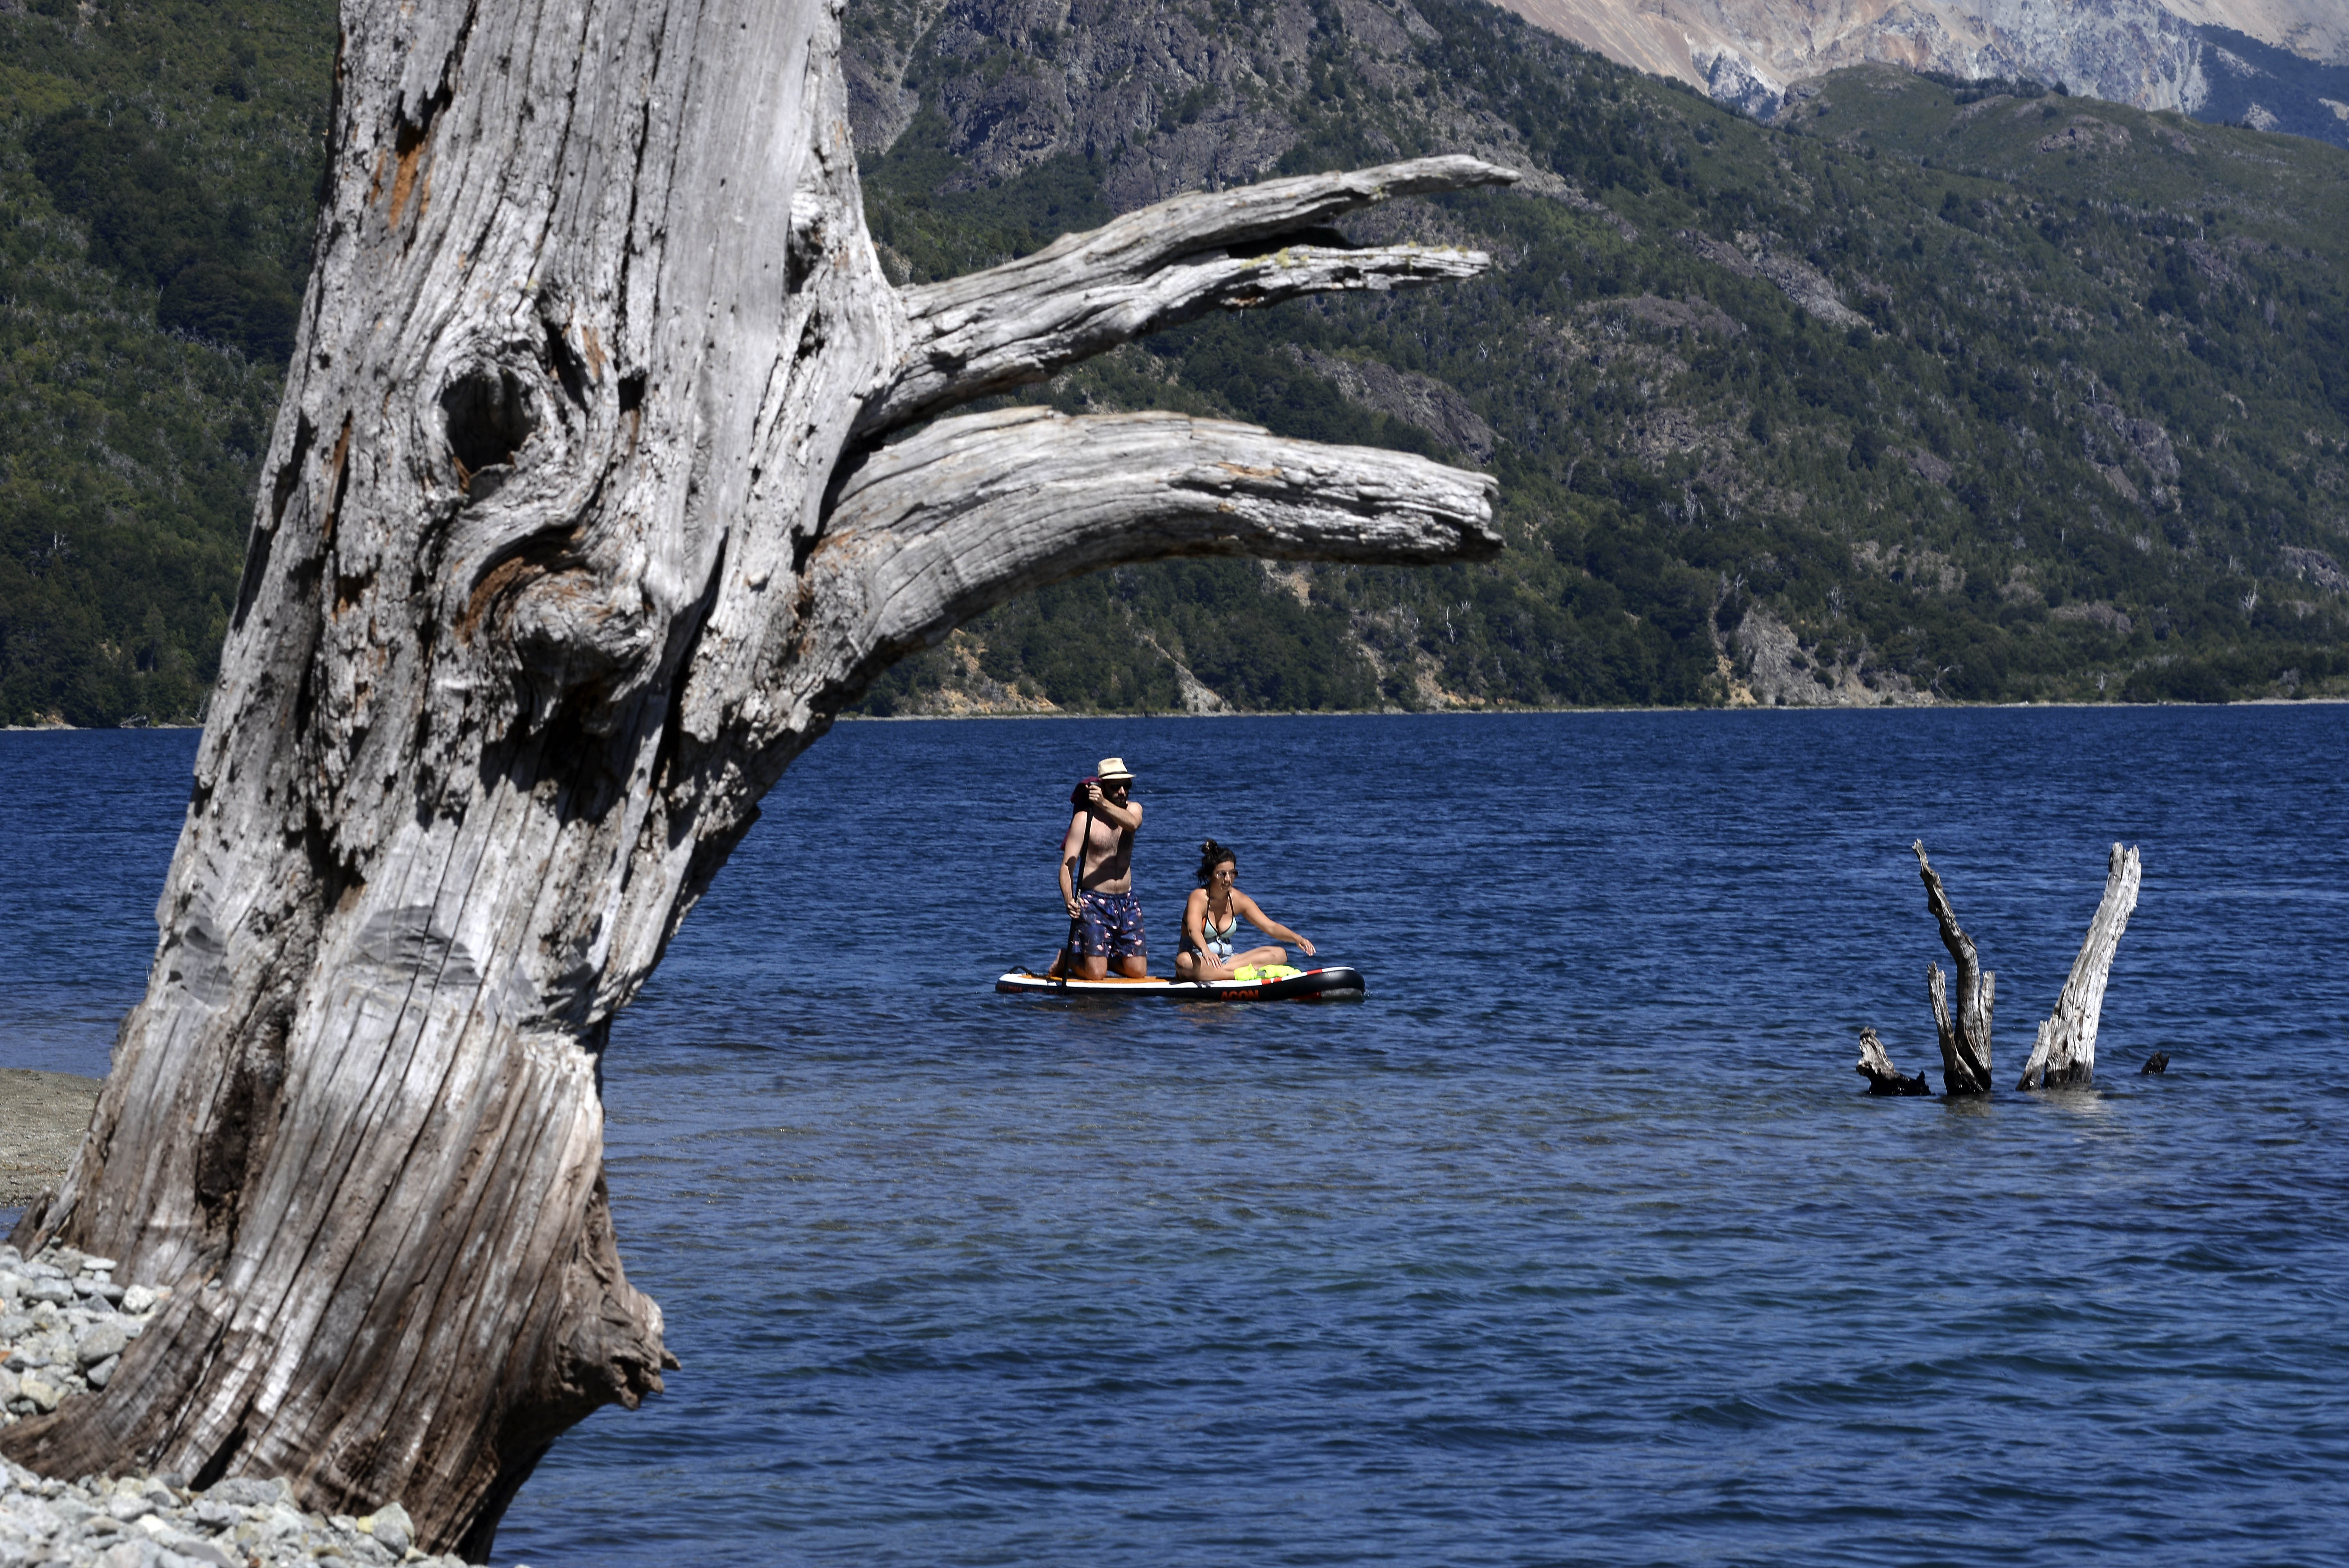 A remarla. En kayaks o sobre tablas de stand up paddle, las aguas del lago Guillelmo invitan a la exploración. Foto: Alfredo Leiva.